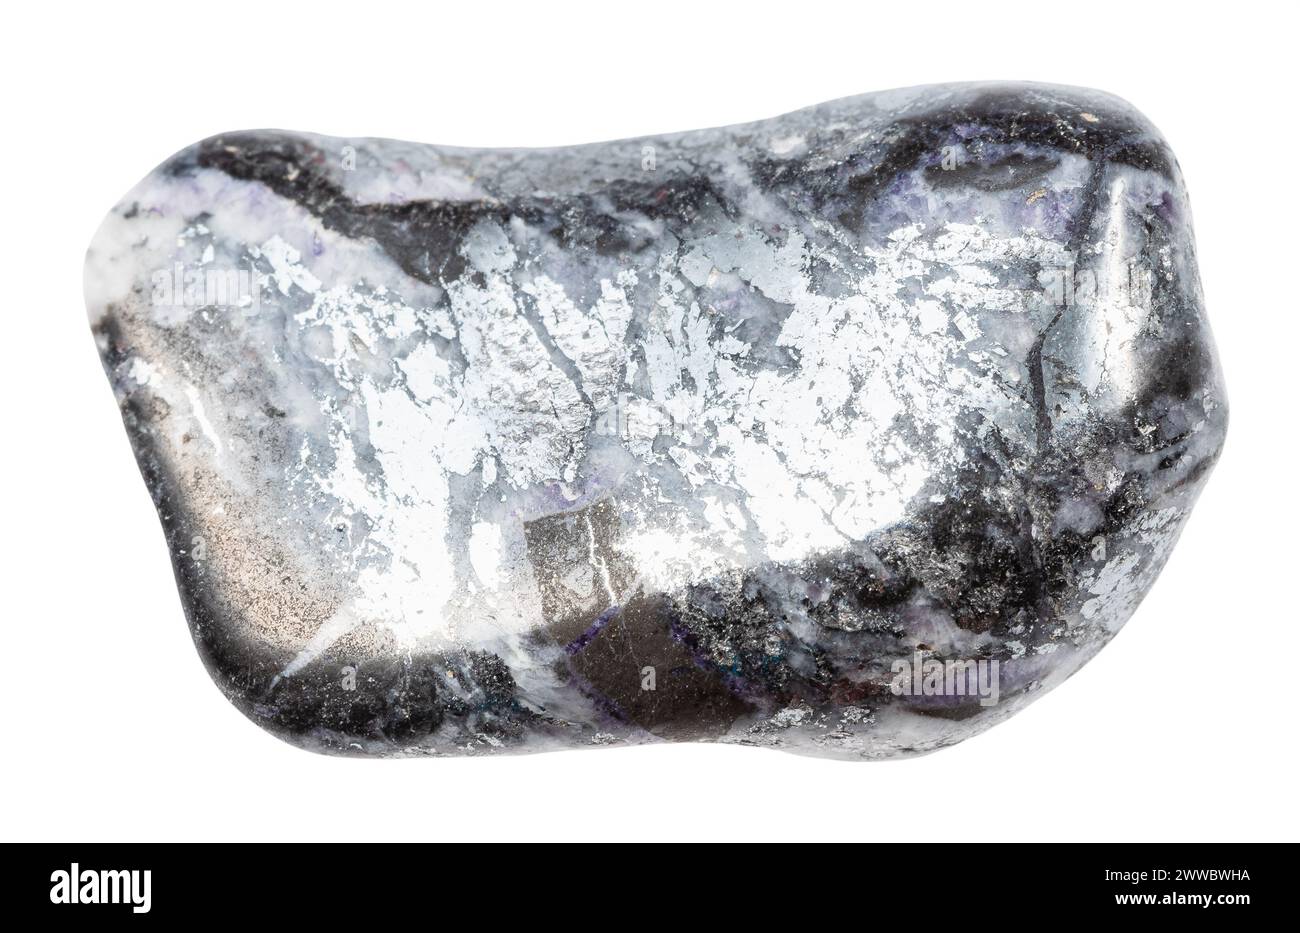 Primo piano di un campione di pietra naturale proveniente dalla raccolta geologica - minerale di stibnite tumulato isolato su sfondo bianco proveniente dal Kirghizistan Foto Stock